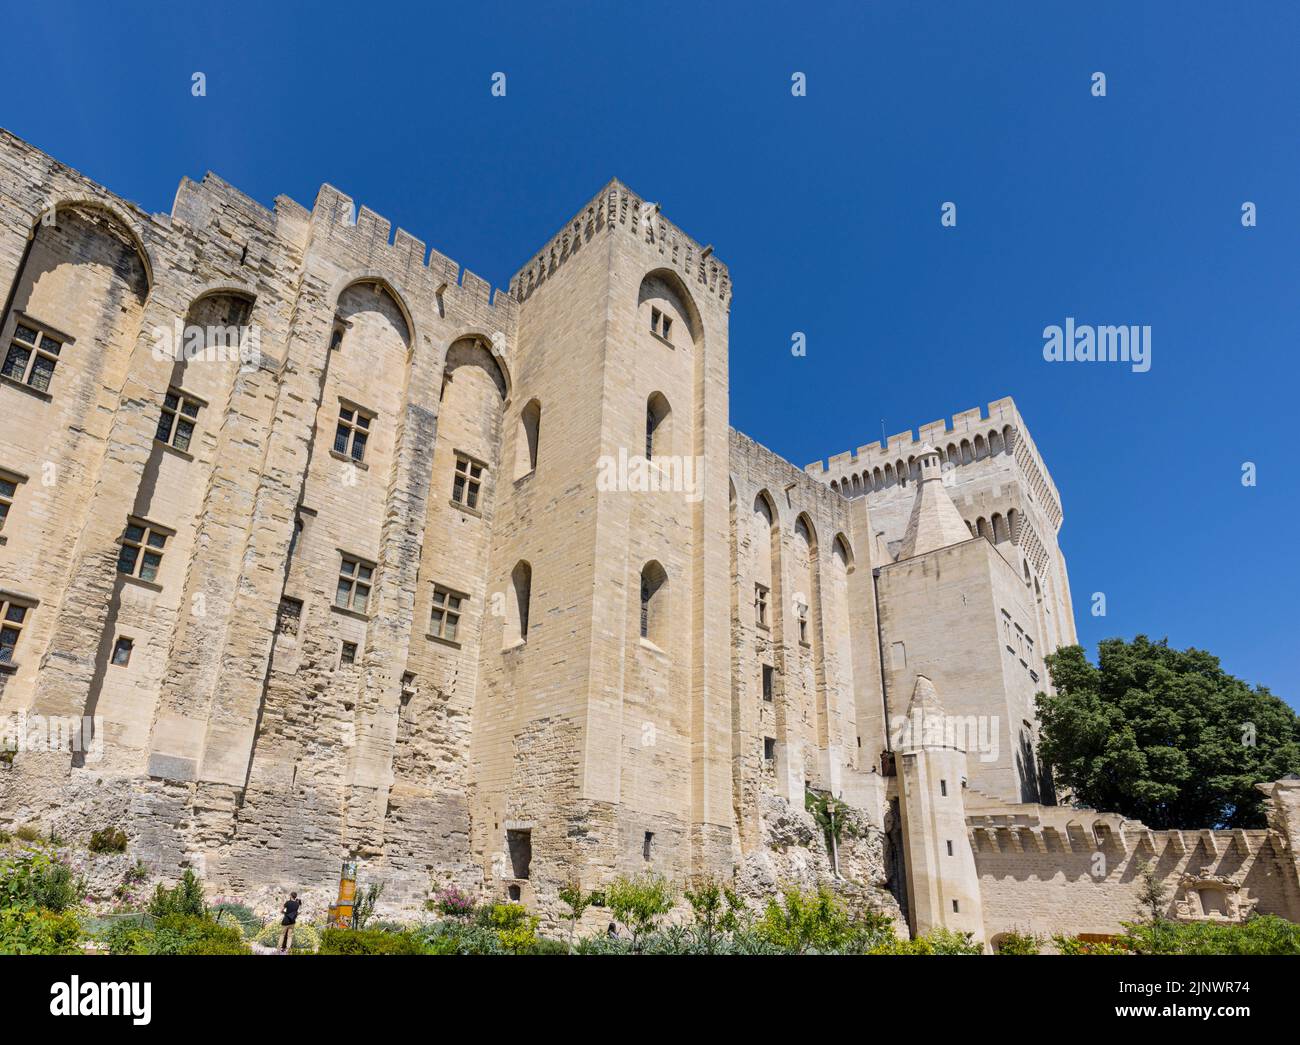 Der Papstpalast - Palast der Päpste, von den Gärten aus gesehen. Avignon, Vaucluse, Frankreich. Das historische Zentrum von Avignon ist eine UNESCO-Welterbe Stockfoto